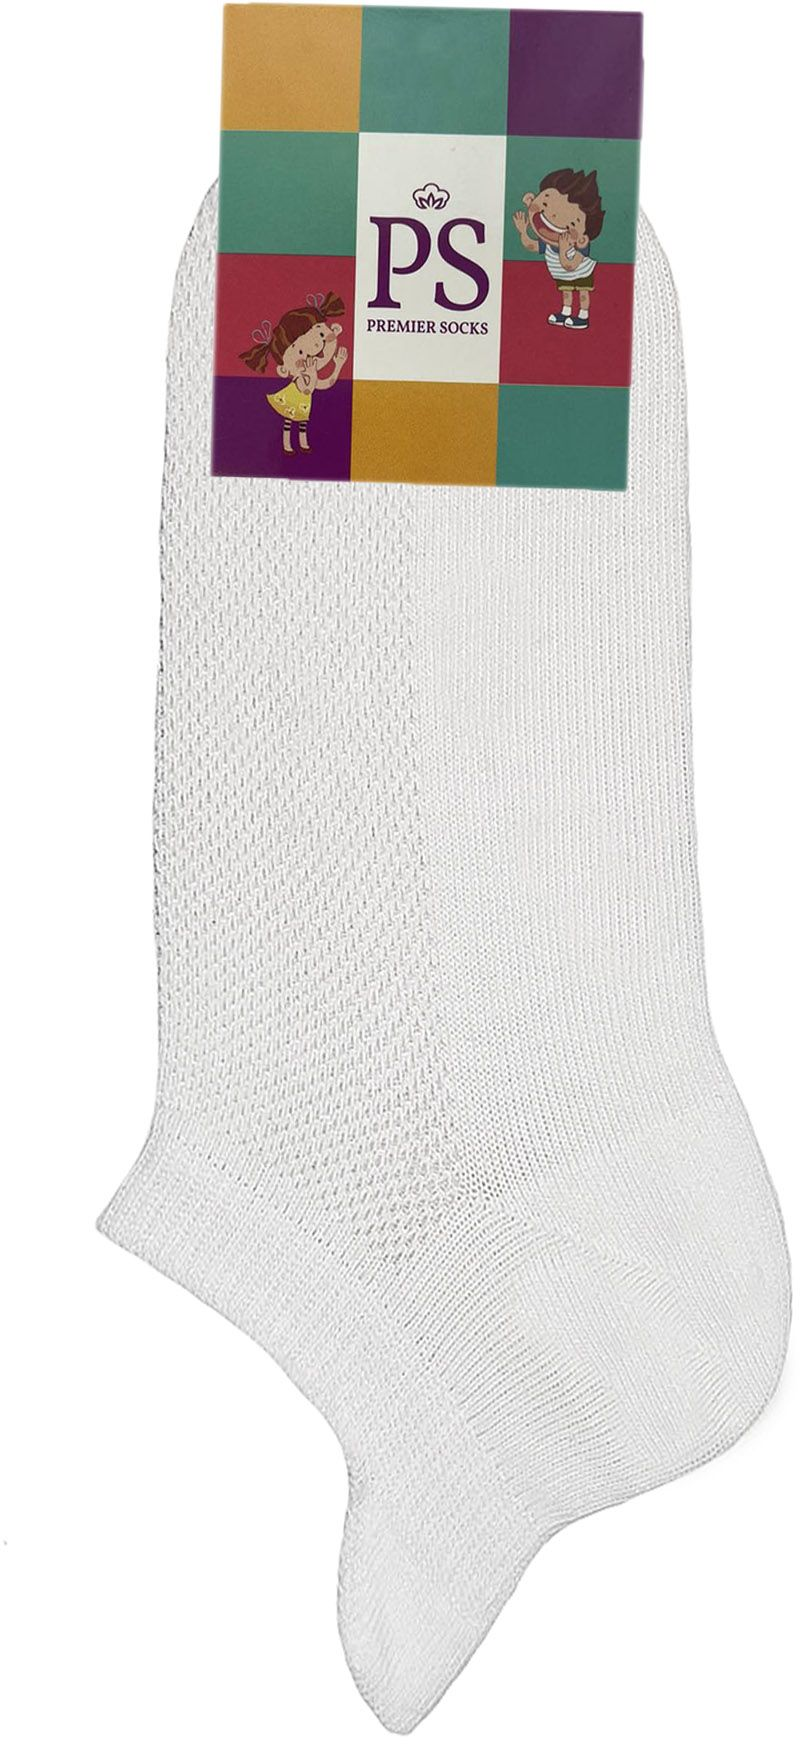 Шкарпетки дитячі Premier Socks 18-20 1 пара білі (4820163319599)фото2